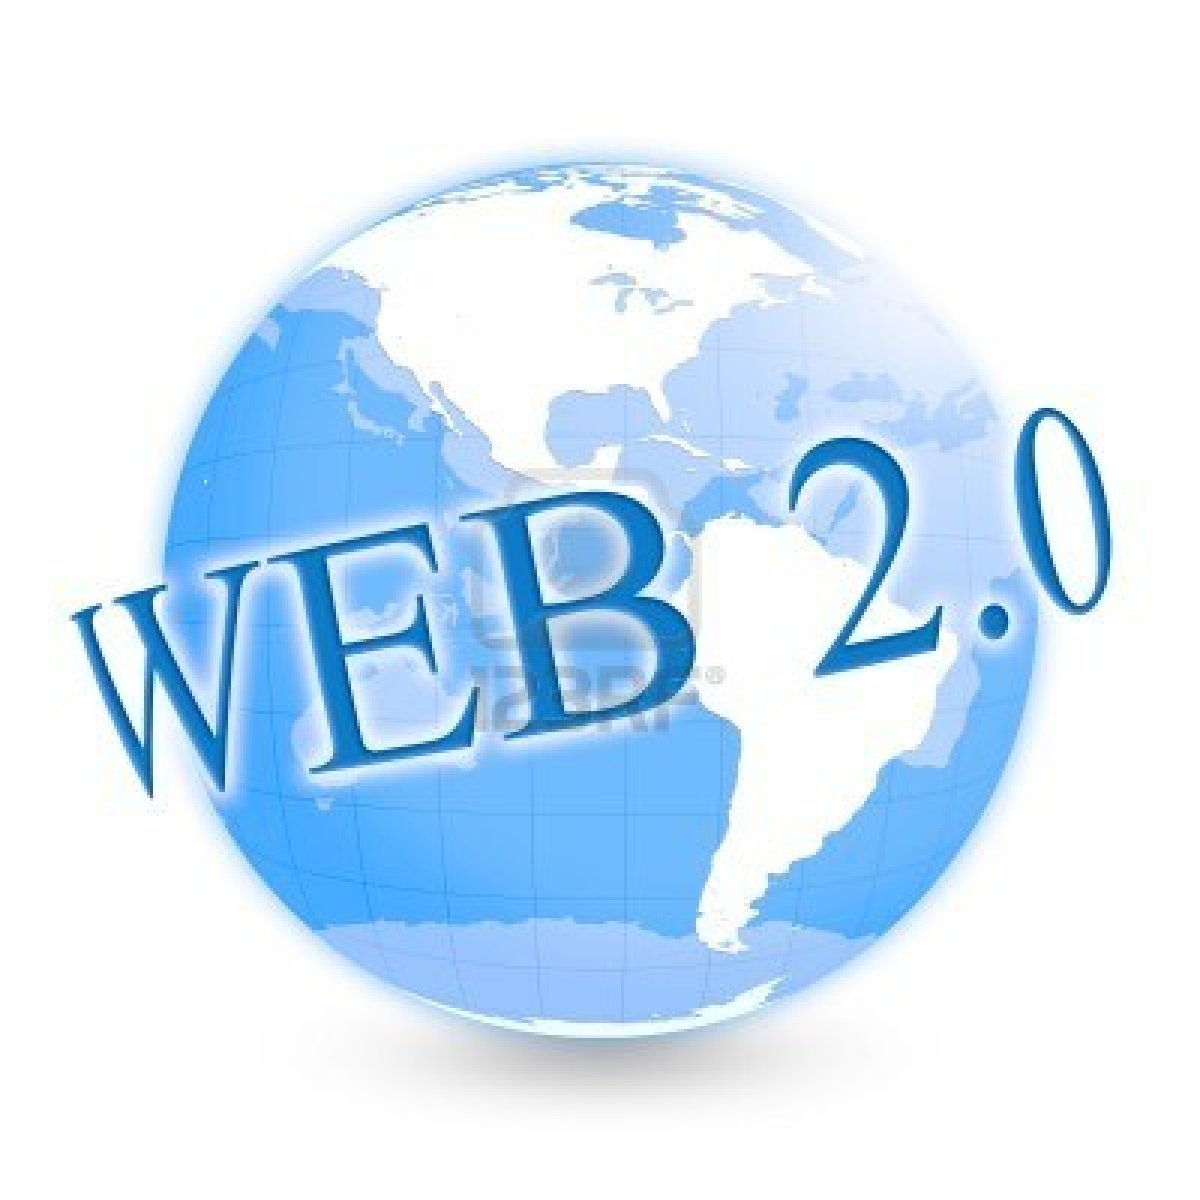 Веб сервис и веб сайт. Веб 2.0. Web 2 сервисы. Web 2.0 в образовании. Сервисы веб 2.0.